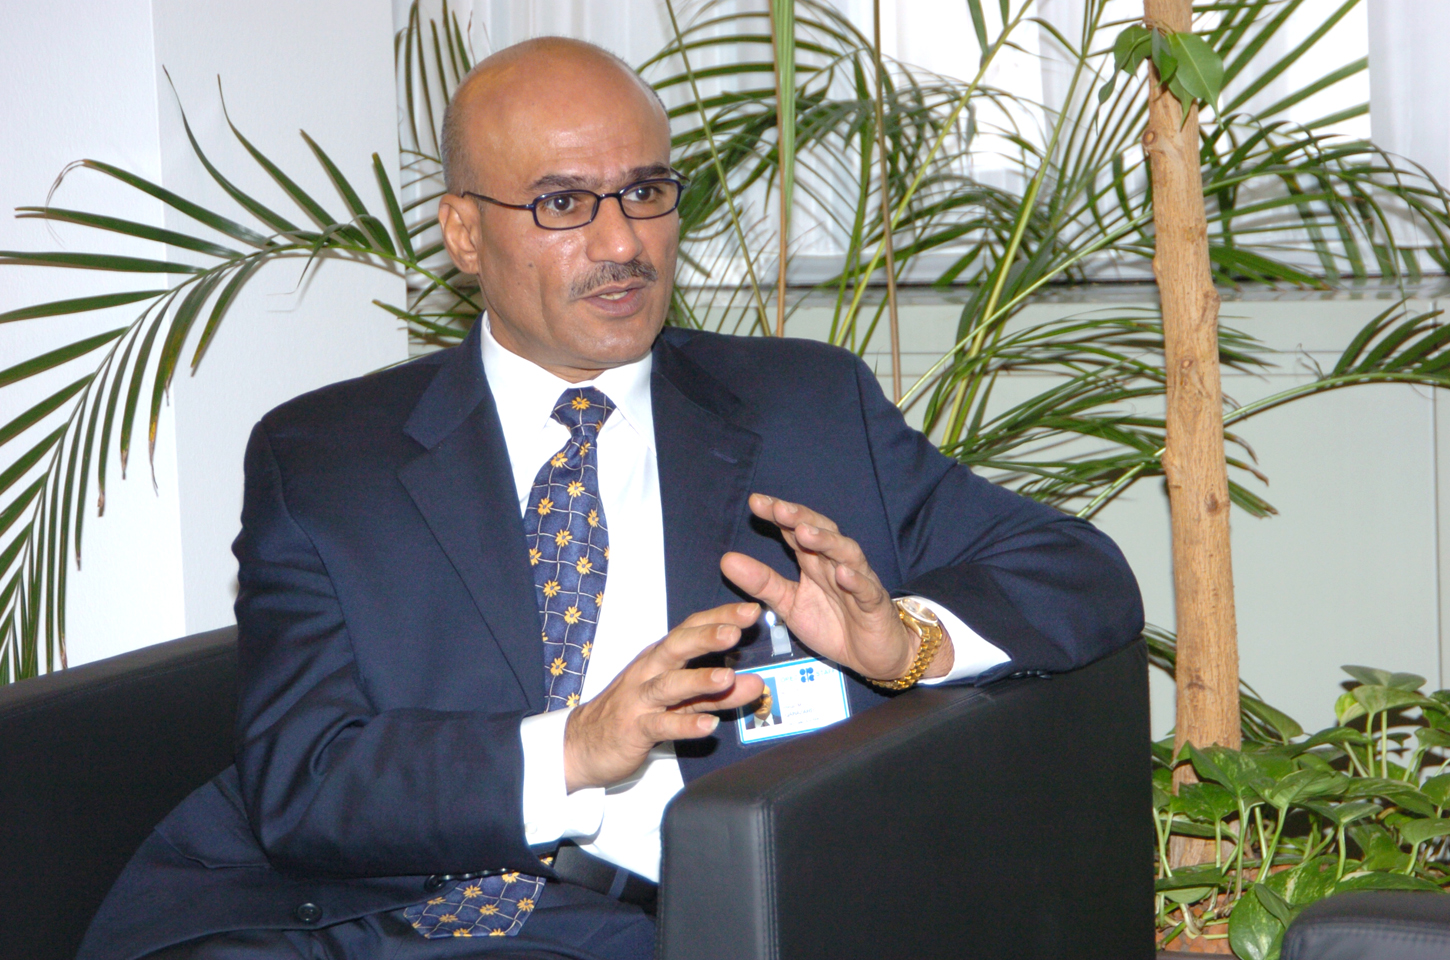 الخبير النفطي ومدير الابحاث السابق في منظمة الدول المصدر للبترول (أوبك) الدكتور حسن قبازرد